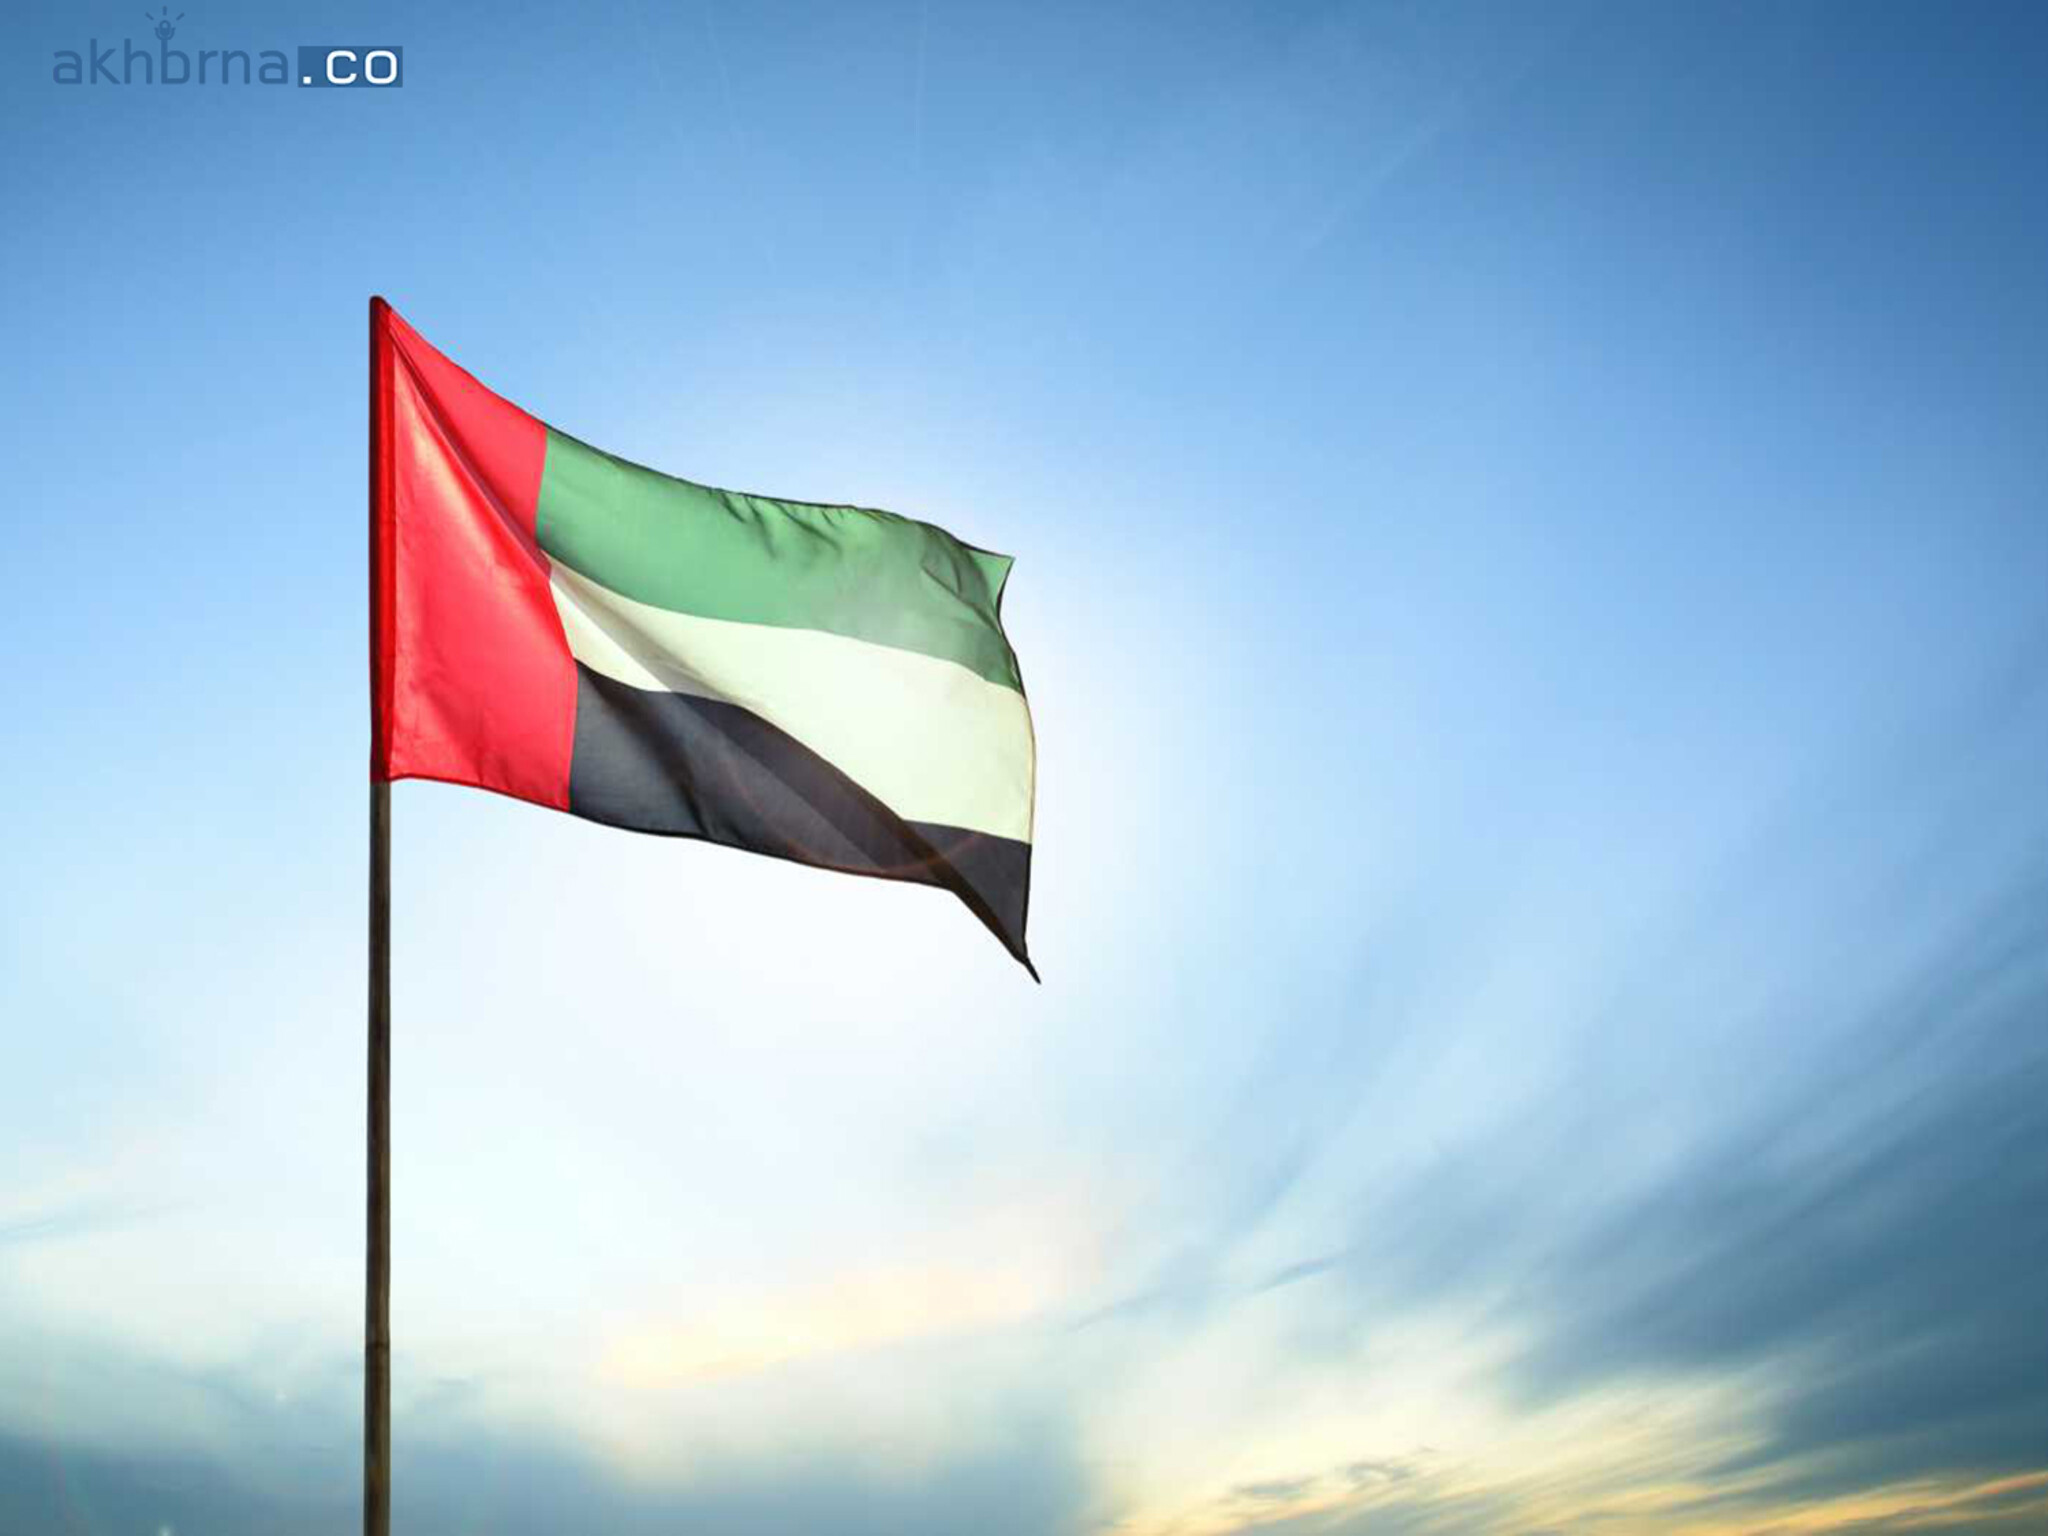 Eid al-Fitr holiday dates Announced for UAE Financial Markets